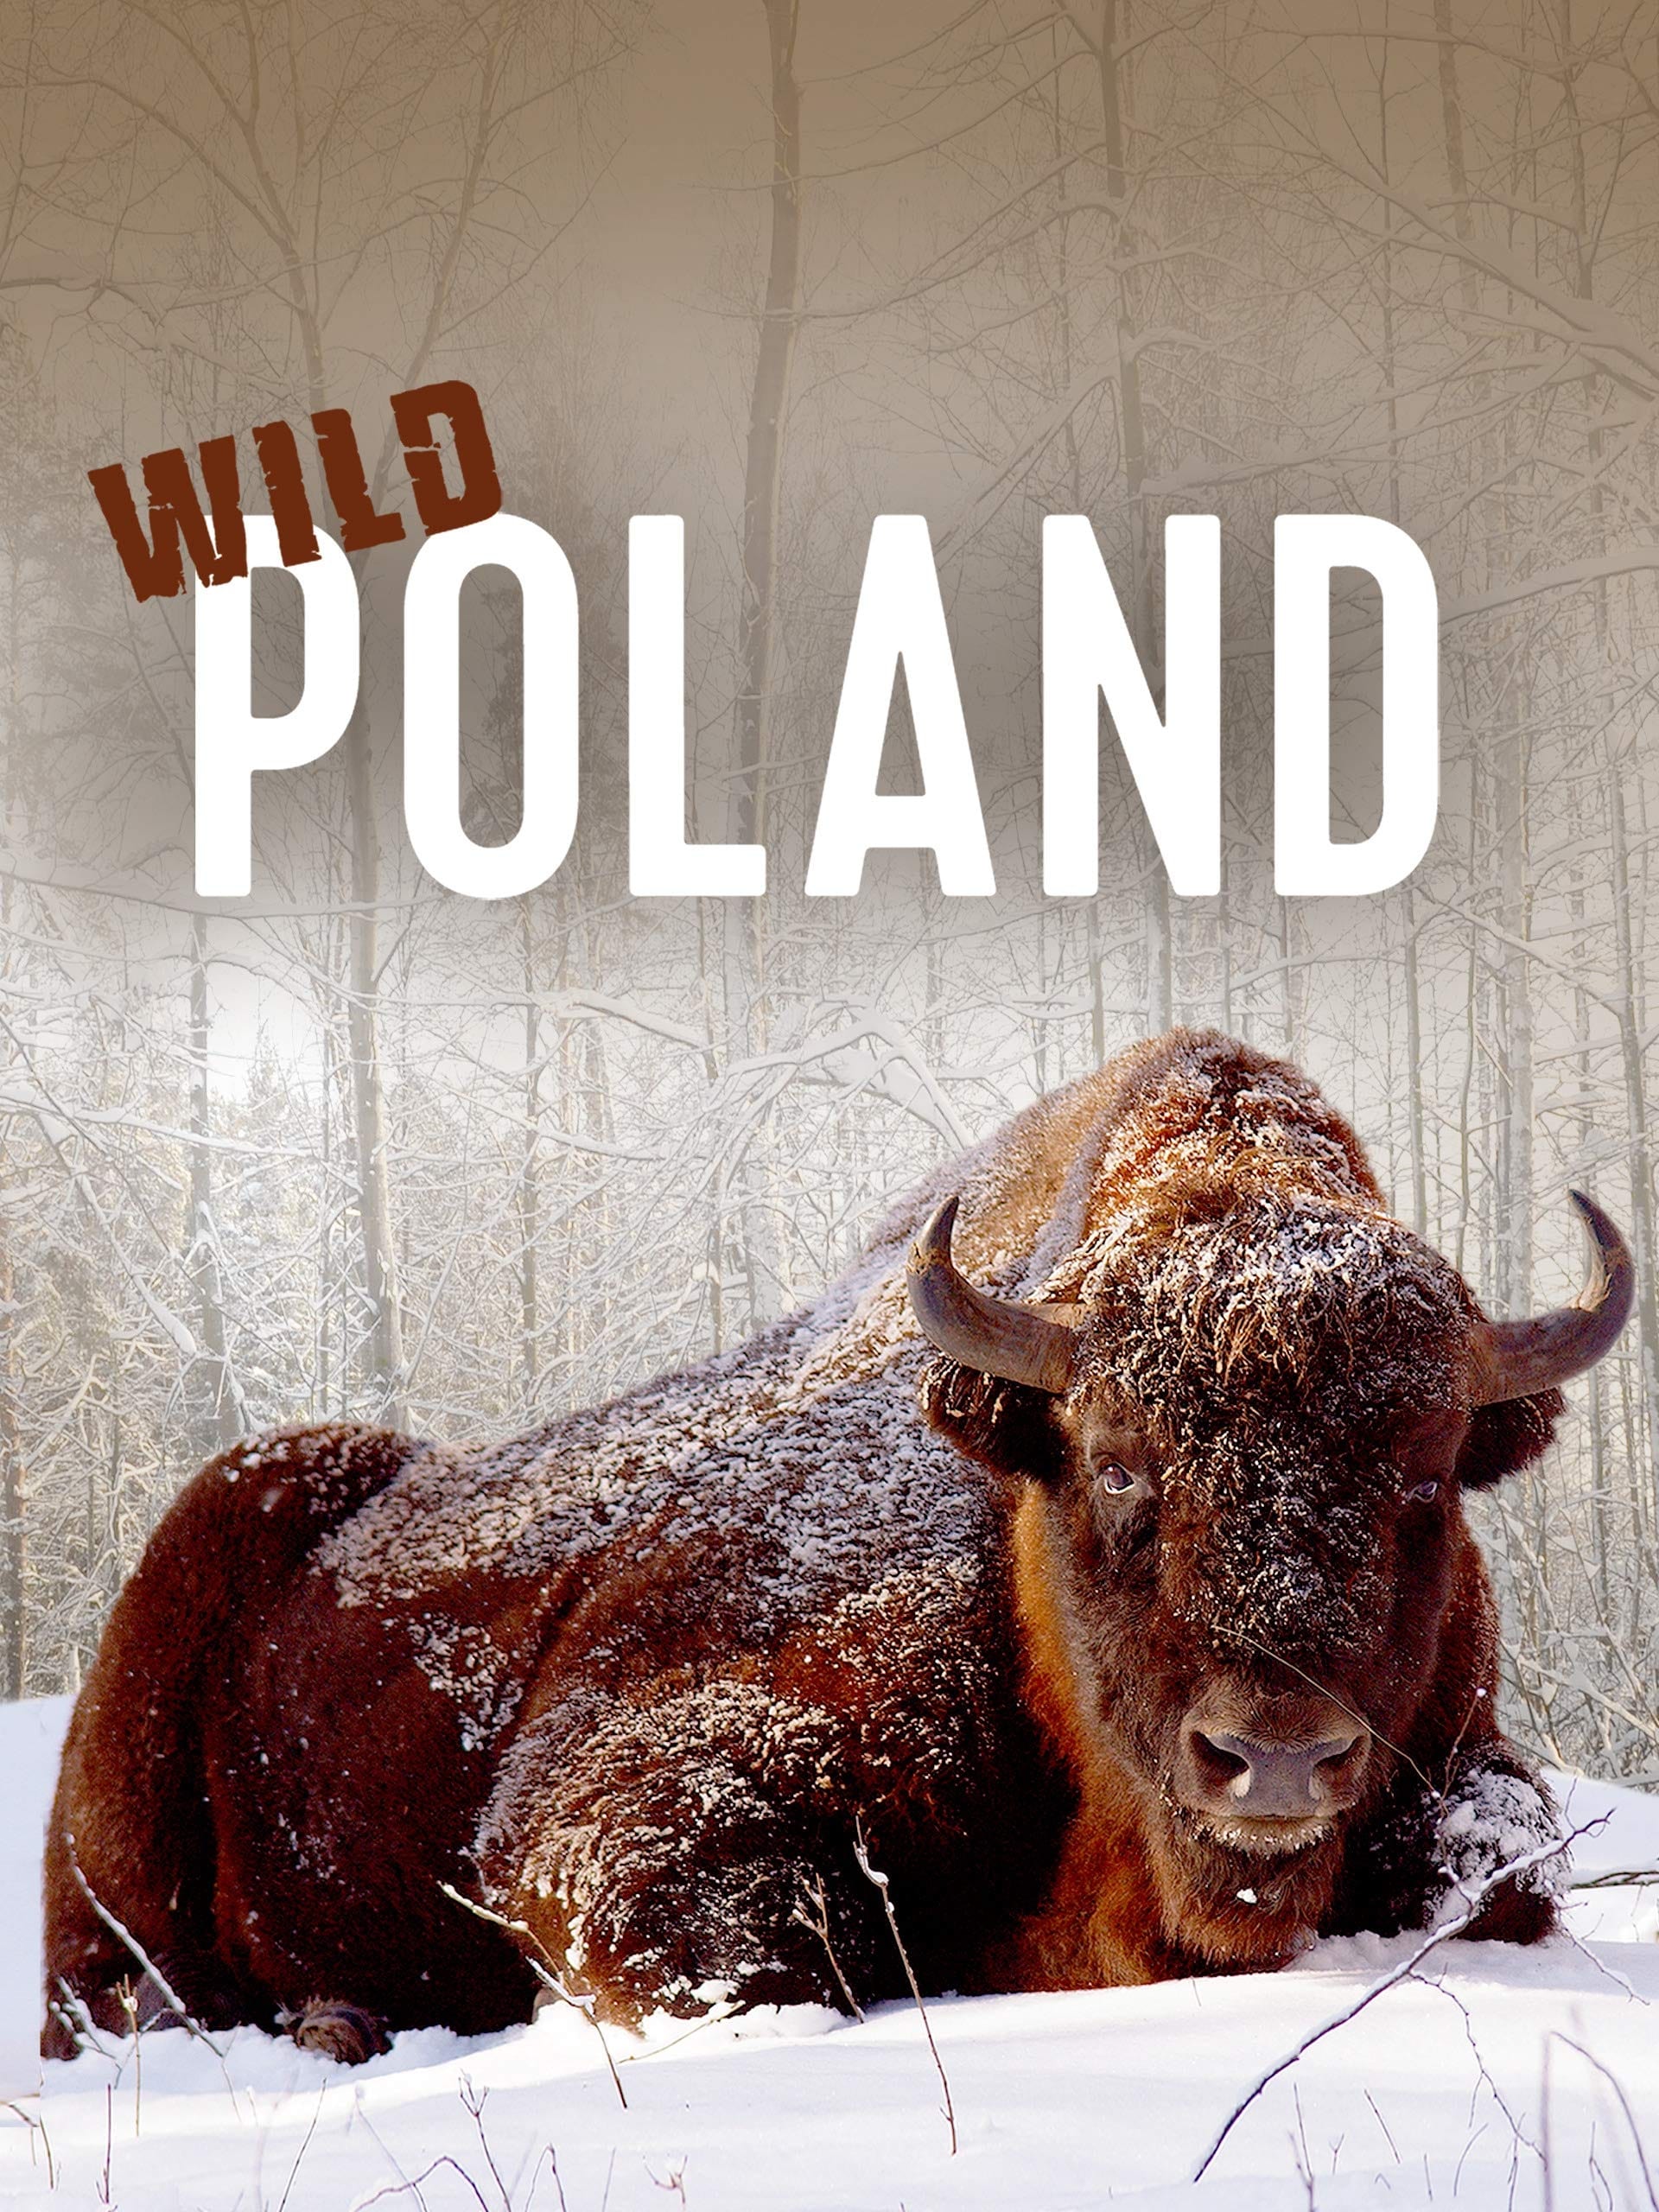 Wild Poland